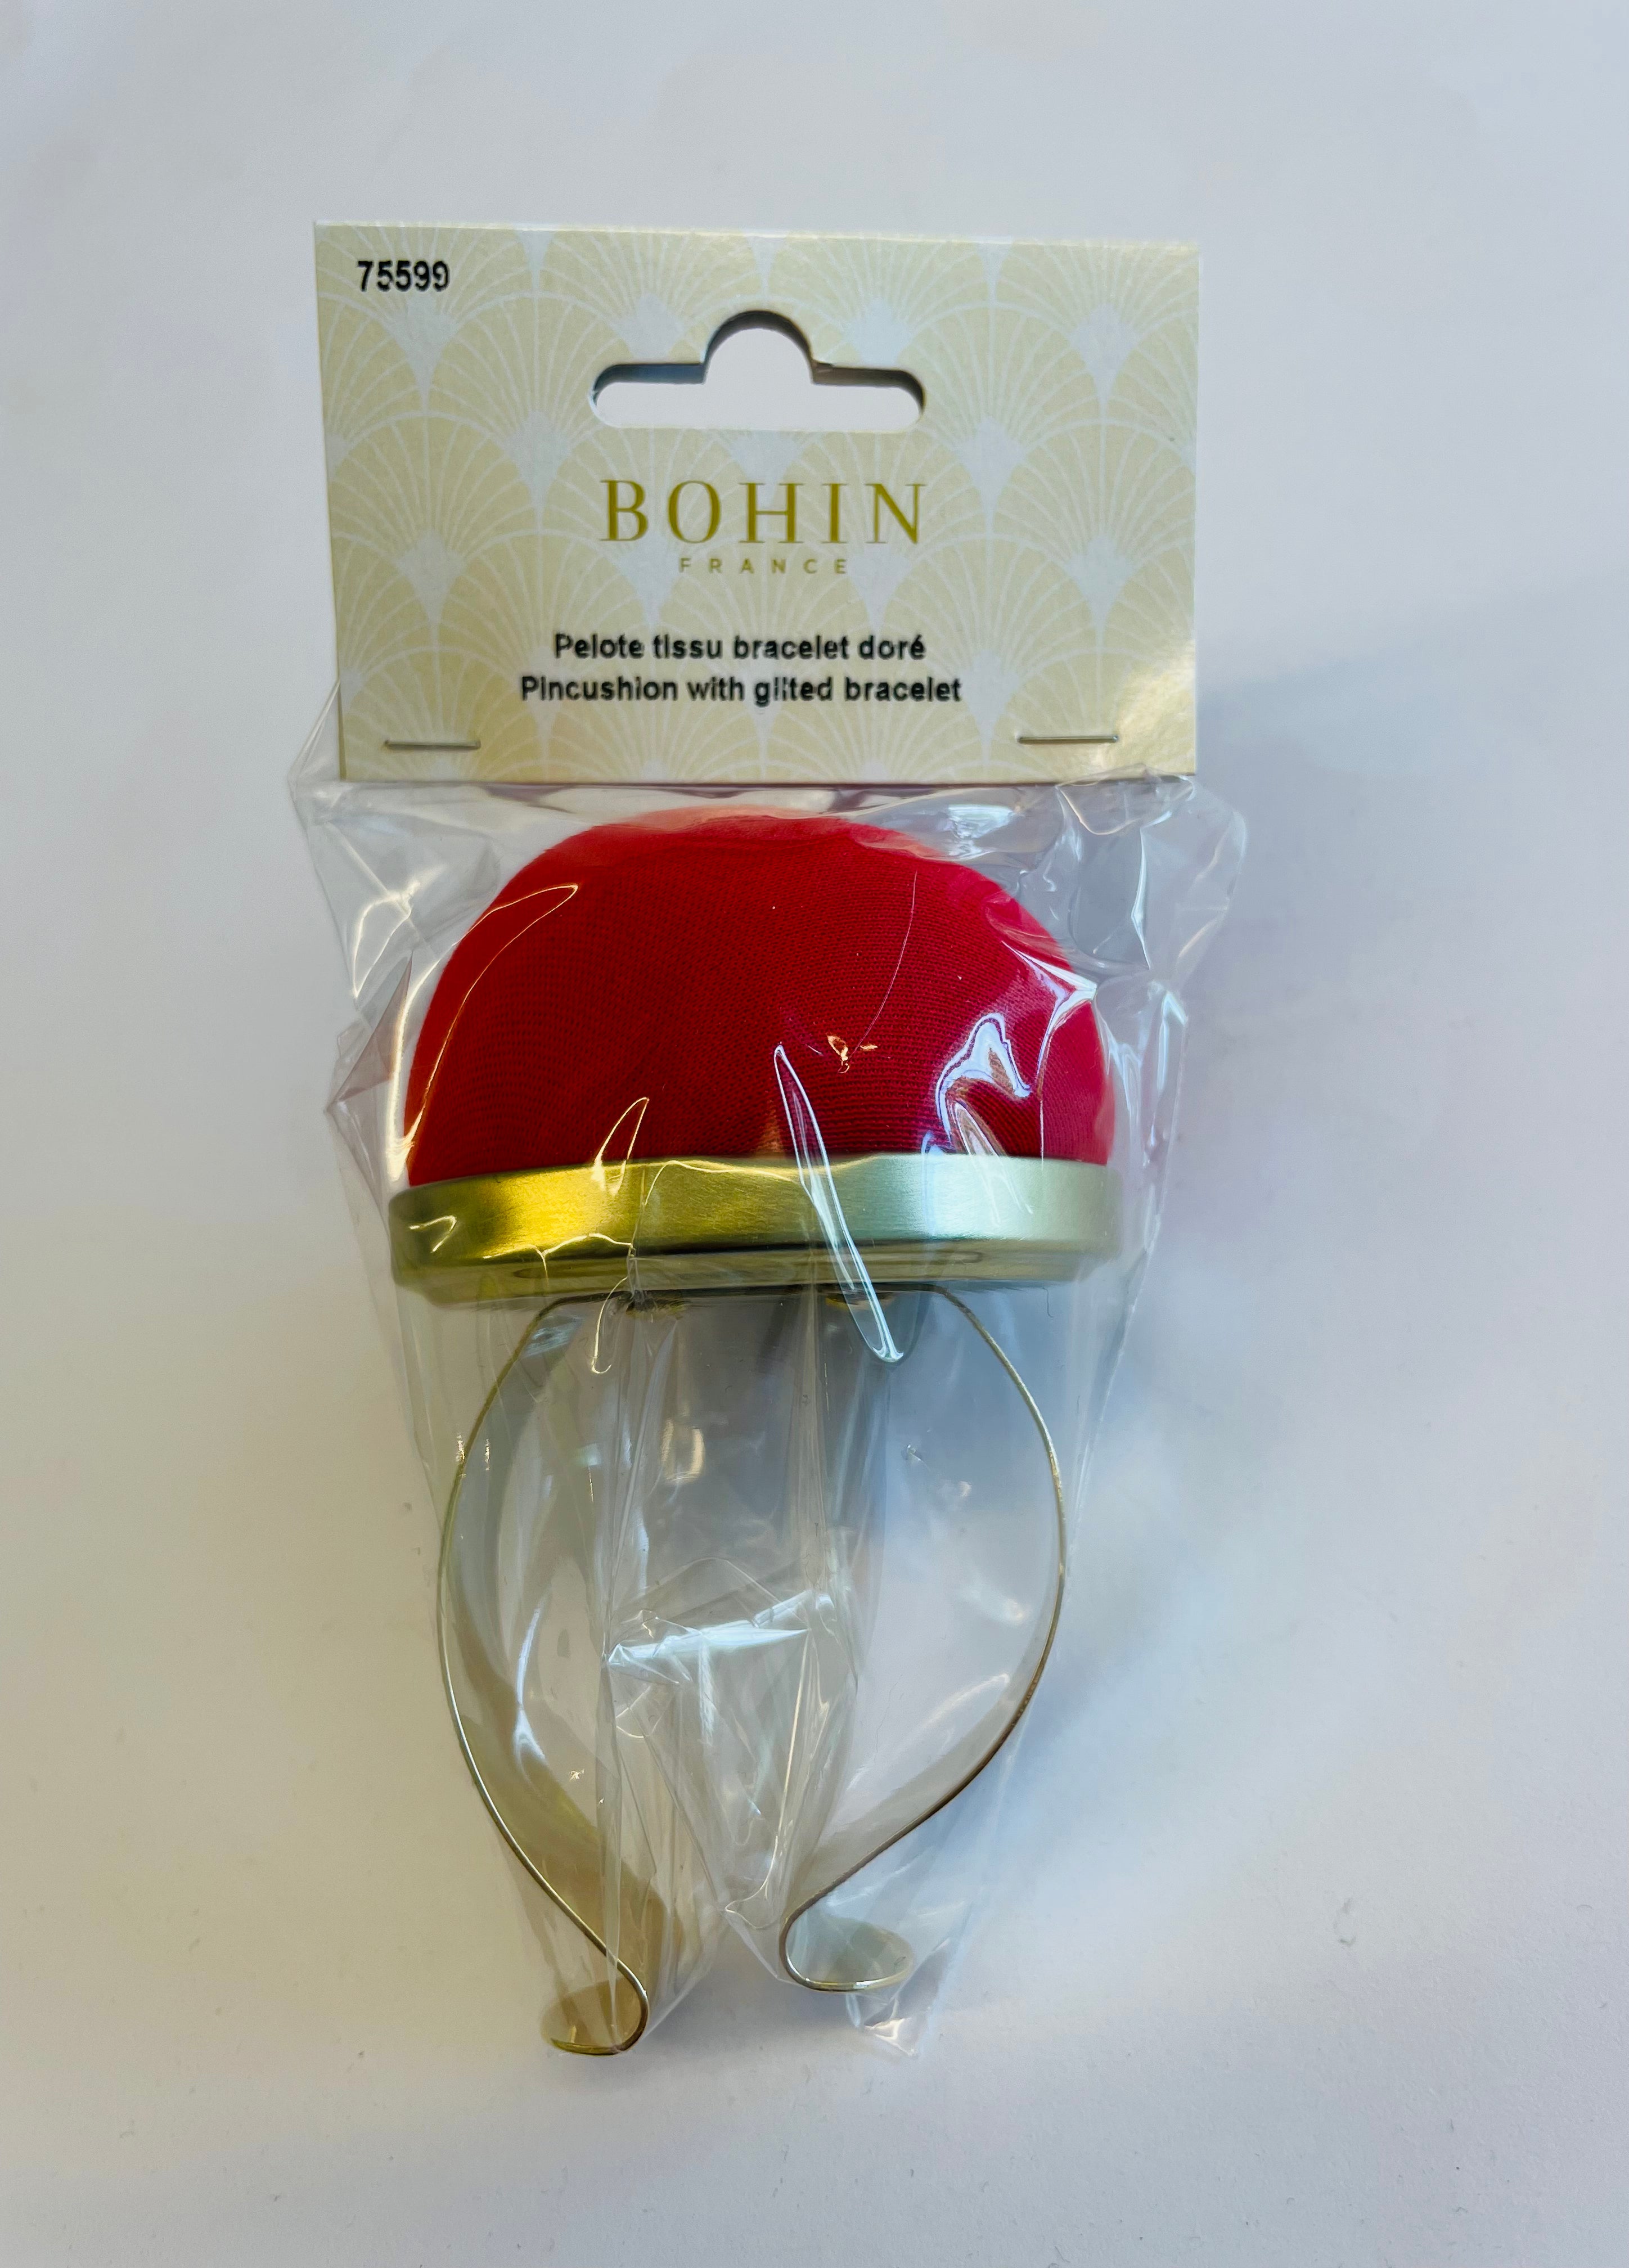 Bohin Pincushion Bracelet